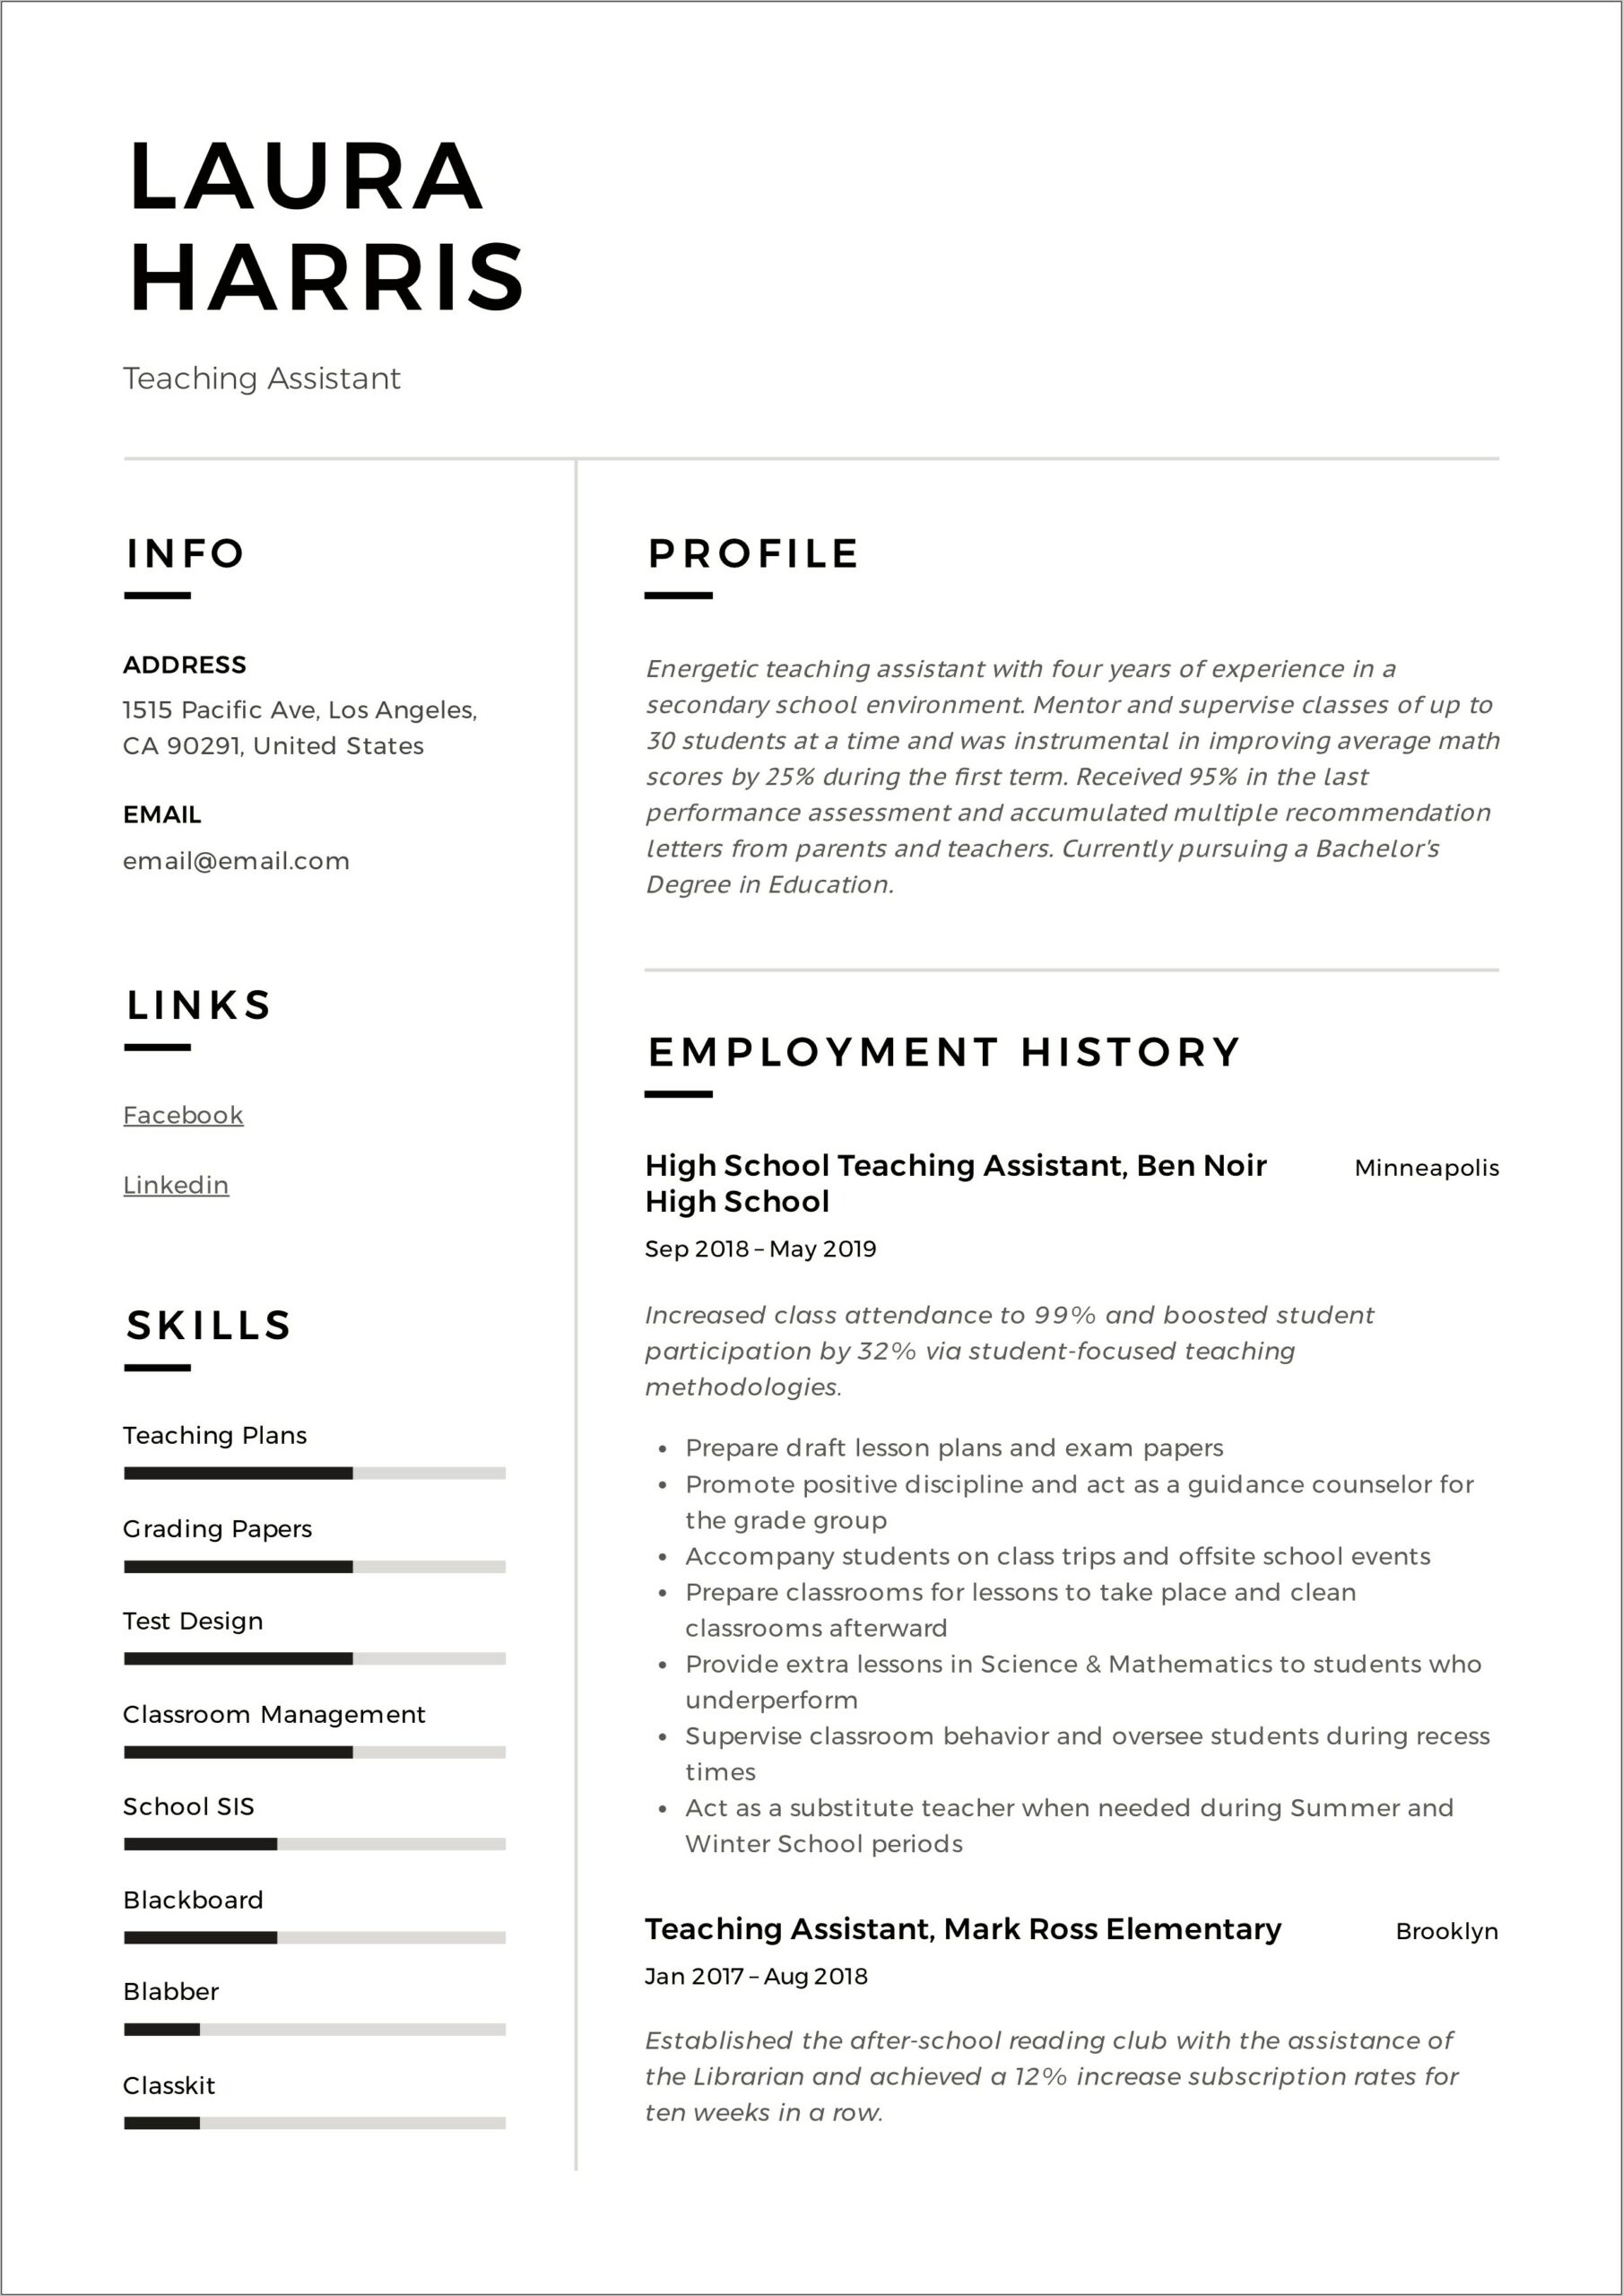 Resume Description Of Jobs Teachers Assistant